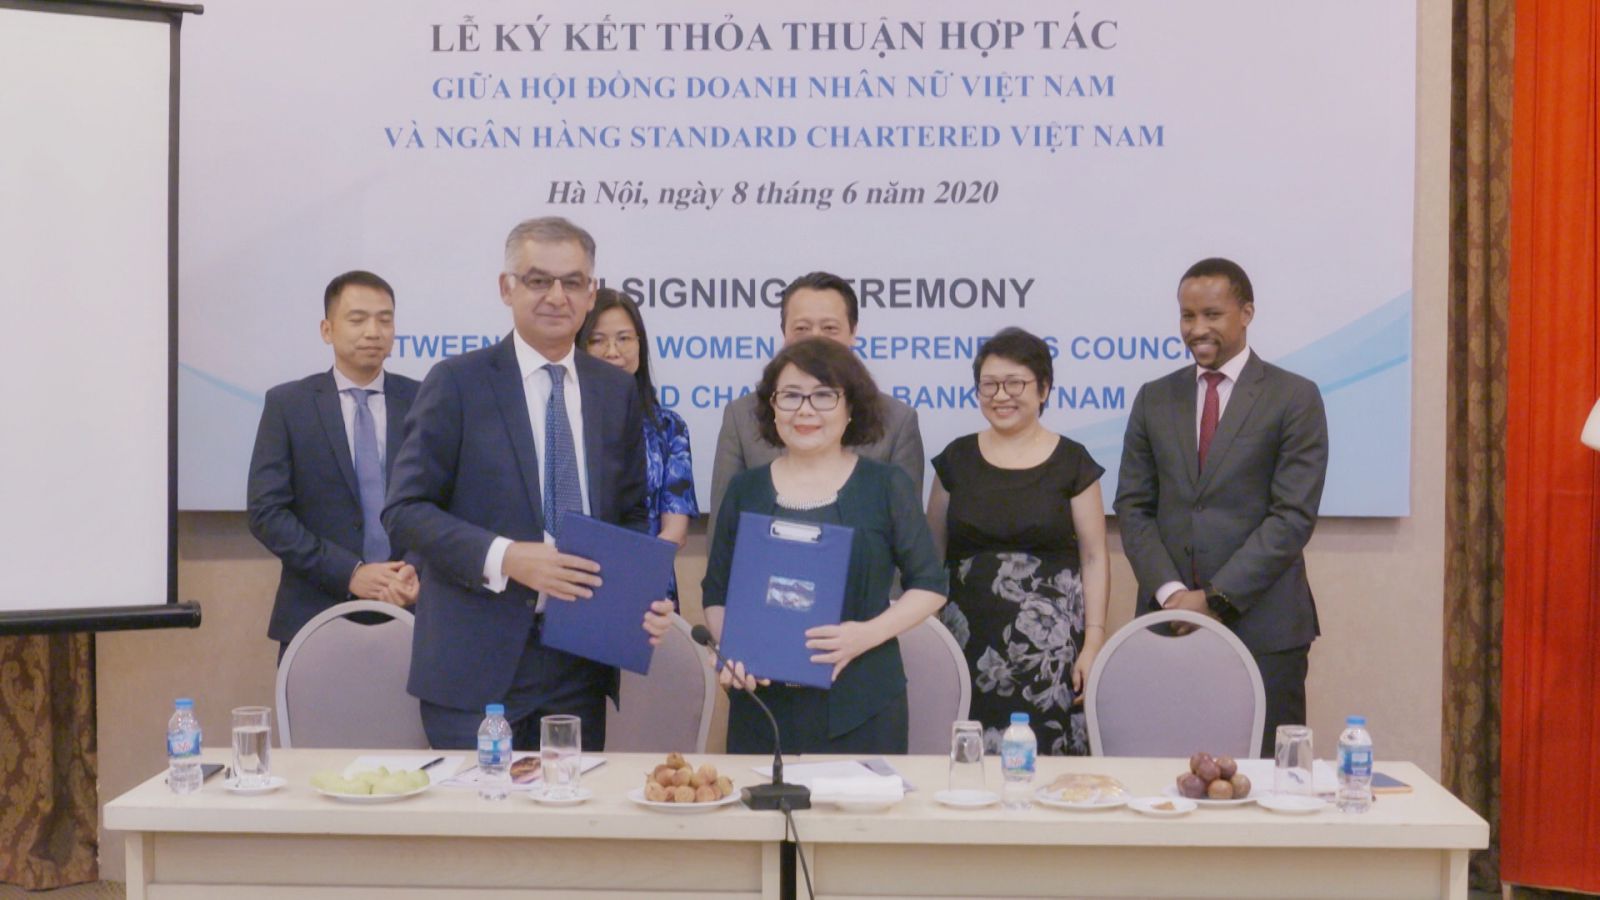 Lễ ký lết thoả thuận hợp tác giữa Hội đồng Doanh nhân nữ Việt Nam (VWEC) và Ngân hàng Standard Chartered Việt Nam